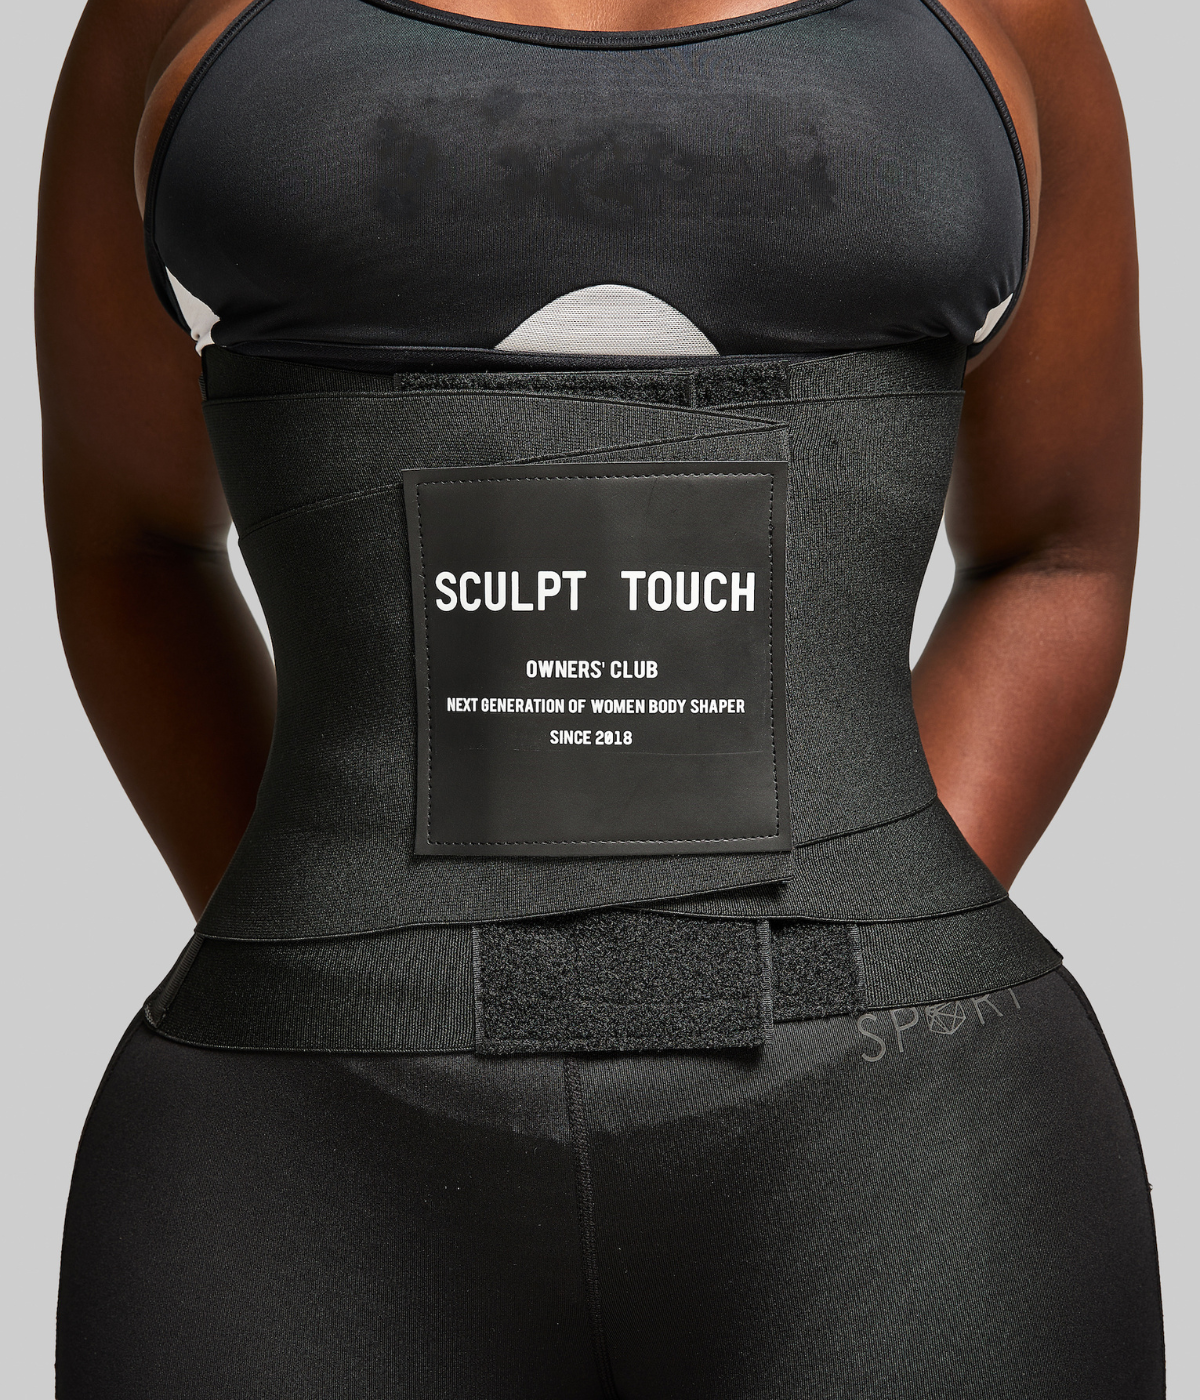 Sculpt Touch Official  Sculpt Your Curve, Just one touch!